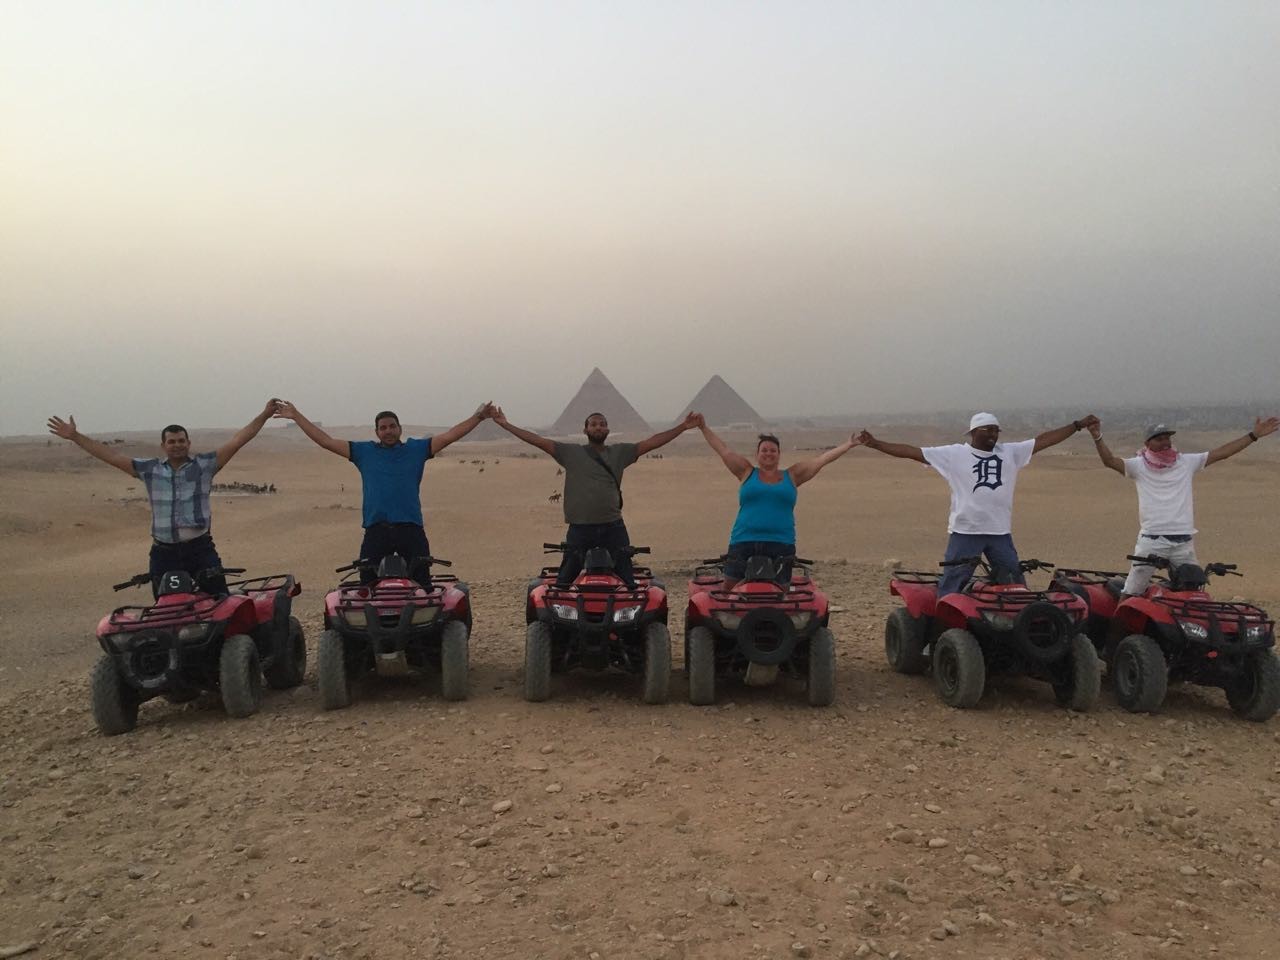 Quad bike Tour at the Pyramids |Cairo Adventure Day Tour